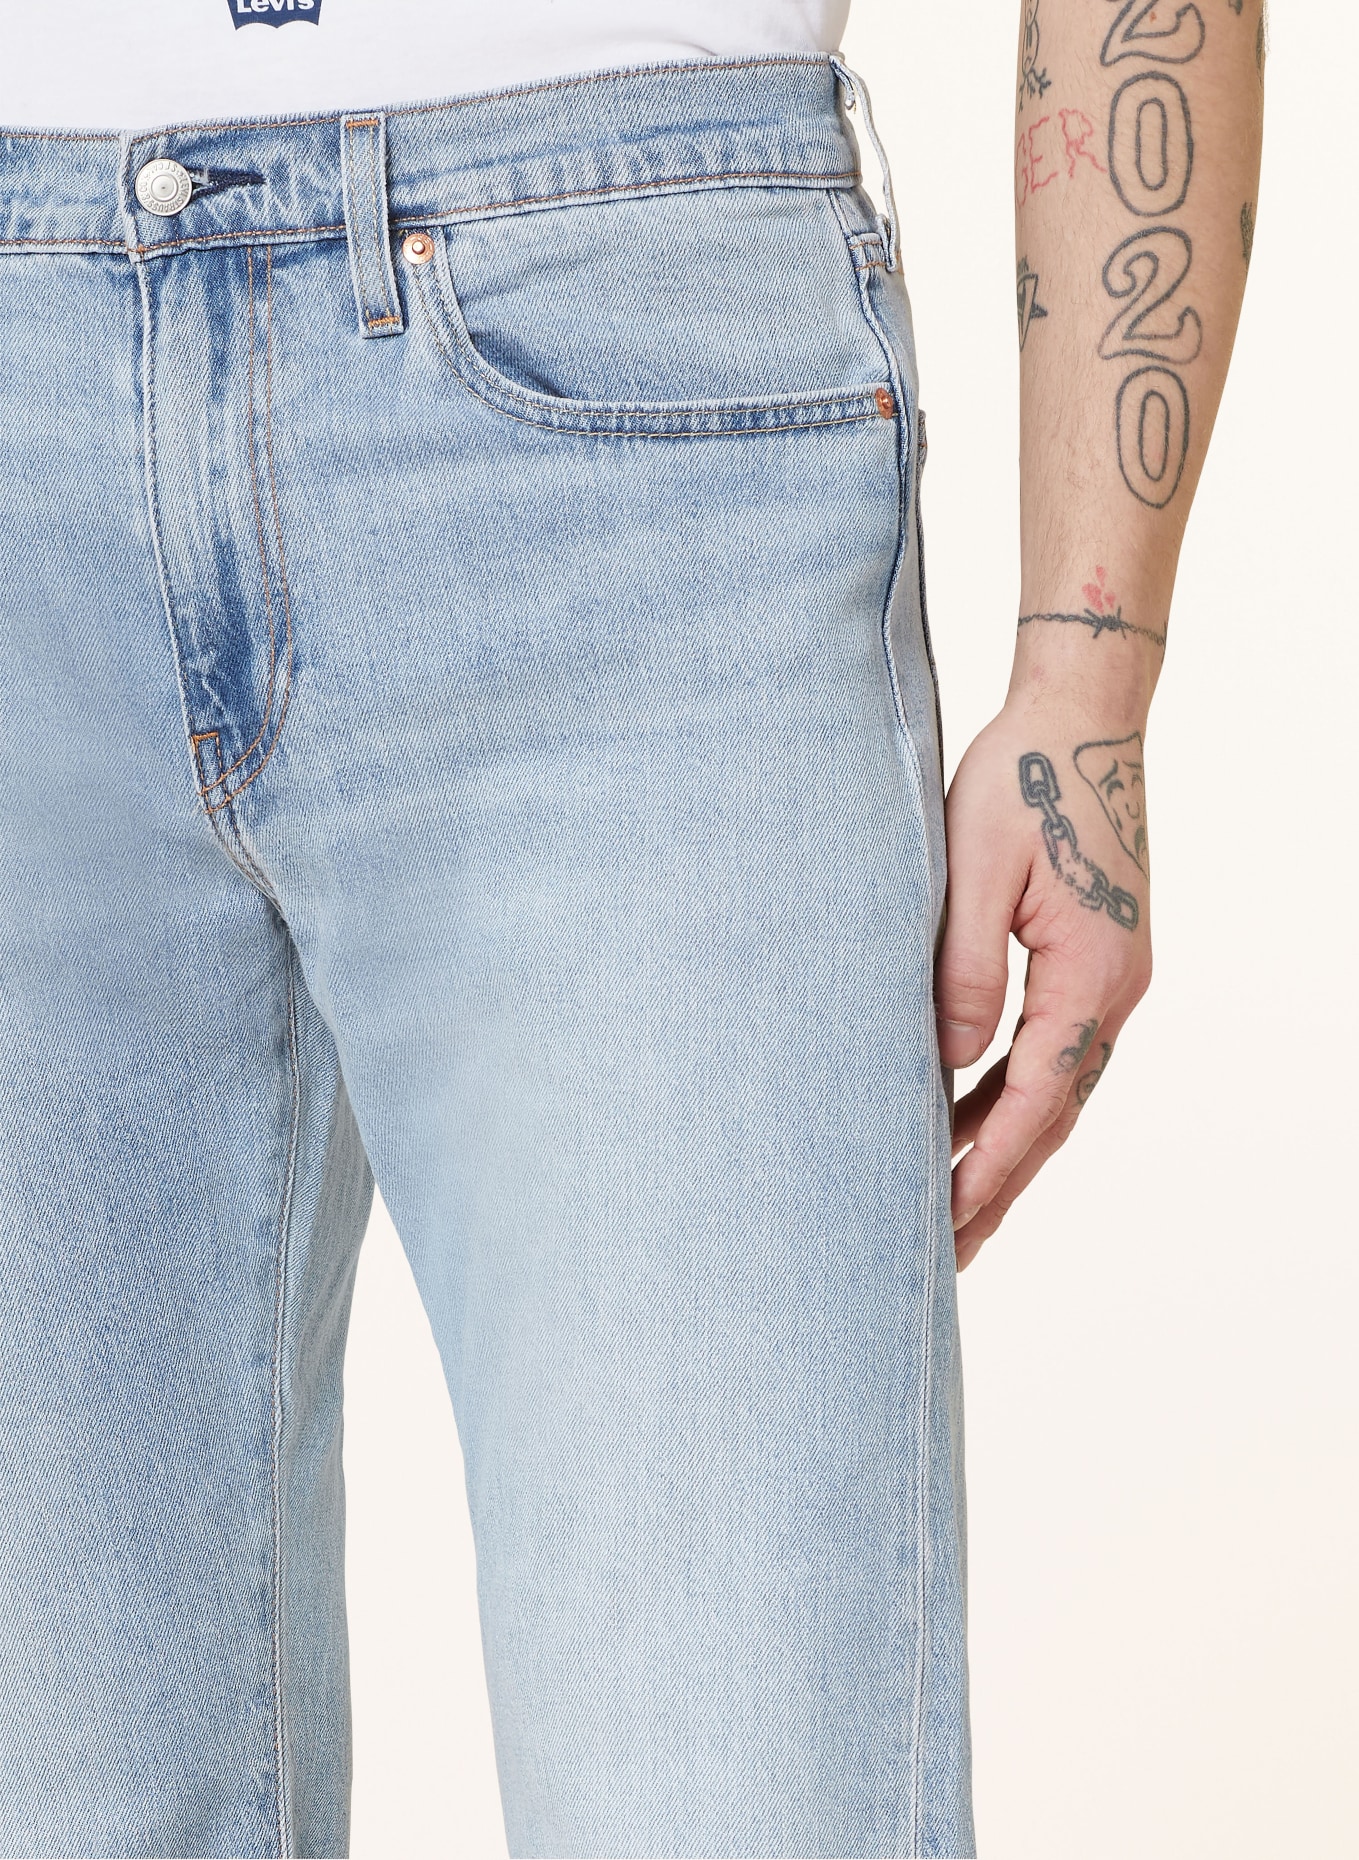 Levi's® Jeans 502 TAPER regular fit, Color: 17 Med Indigo - Worn In (Image 5)